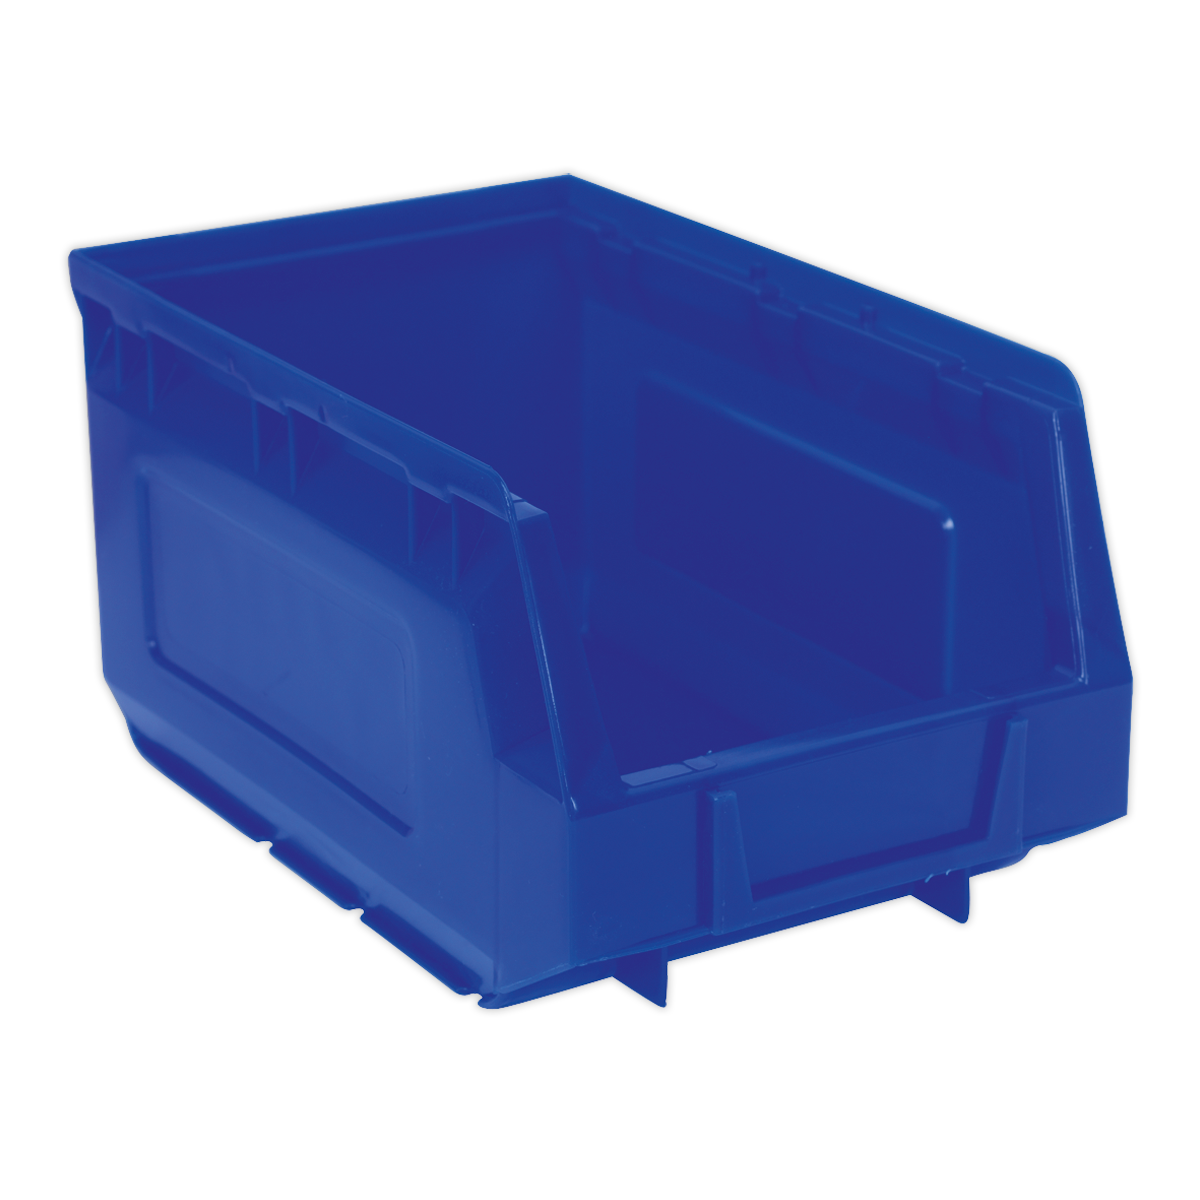 Plastic Storage Bin 150 x 240 x 130mm - Blue Pack of 24